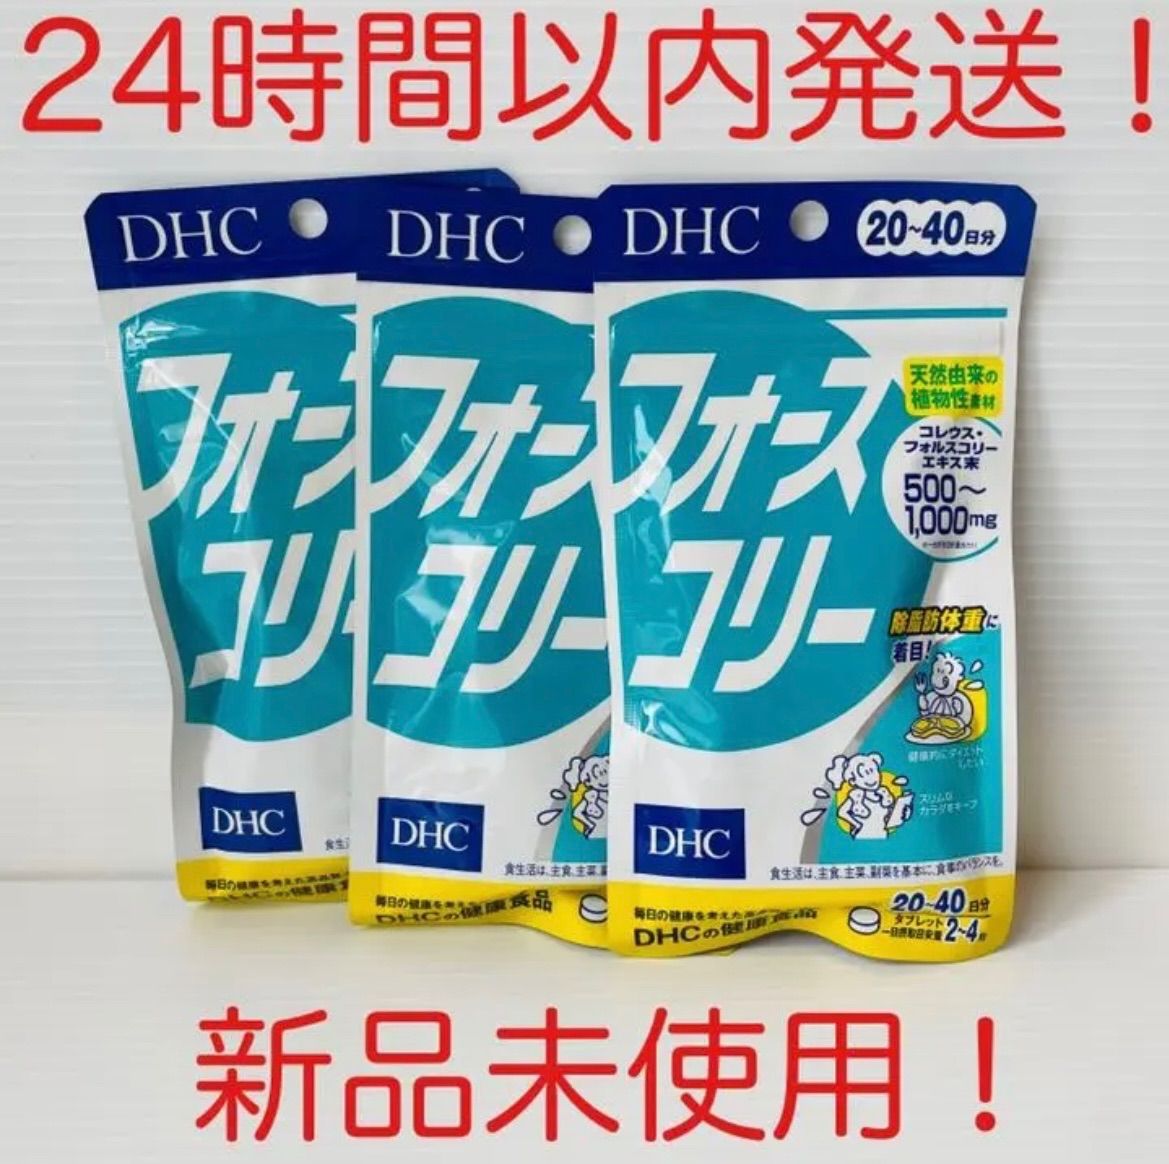 セール新品DHC フォースコリー セット ダイエット食品